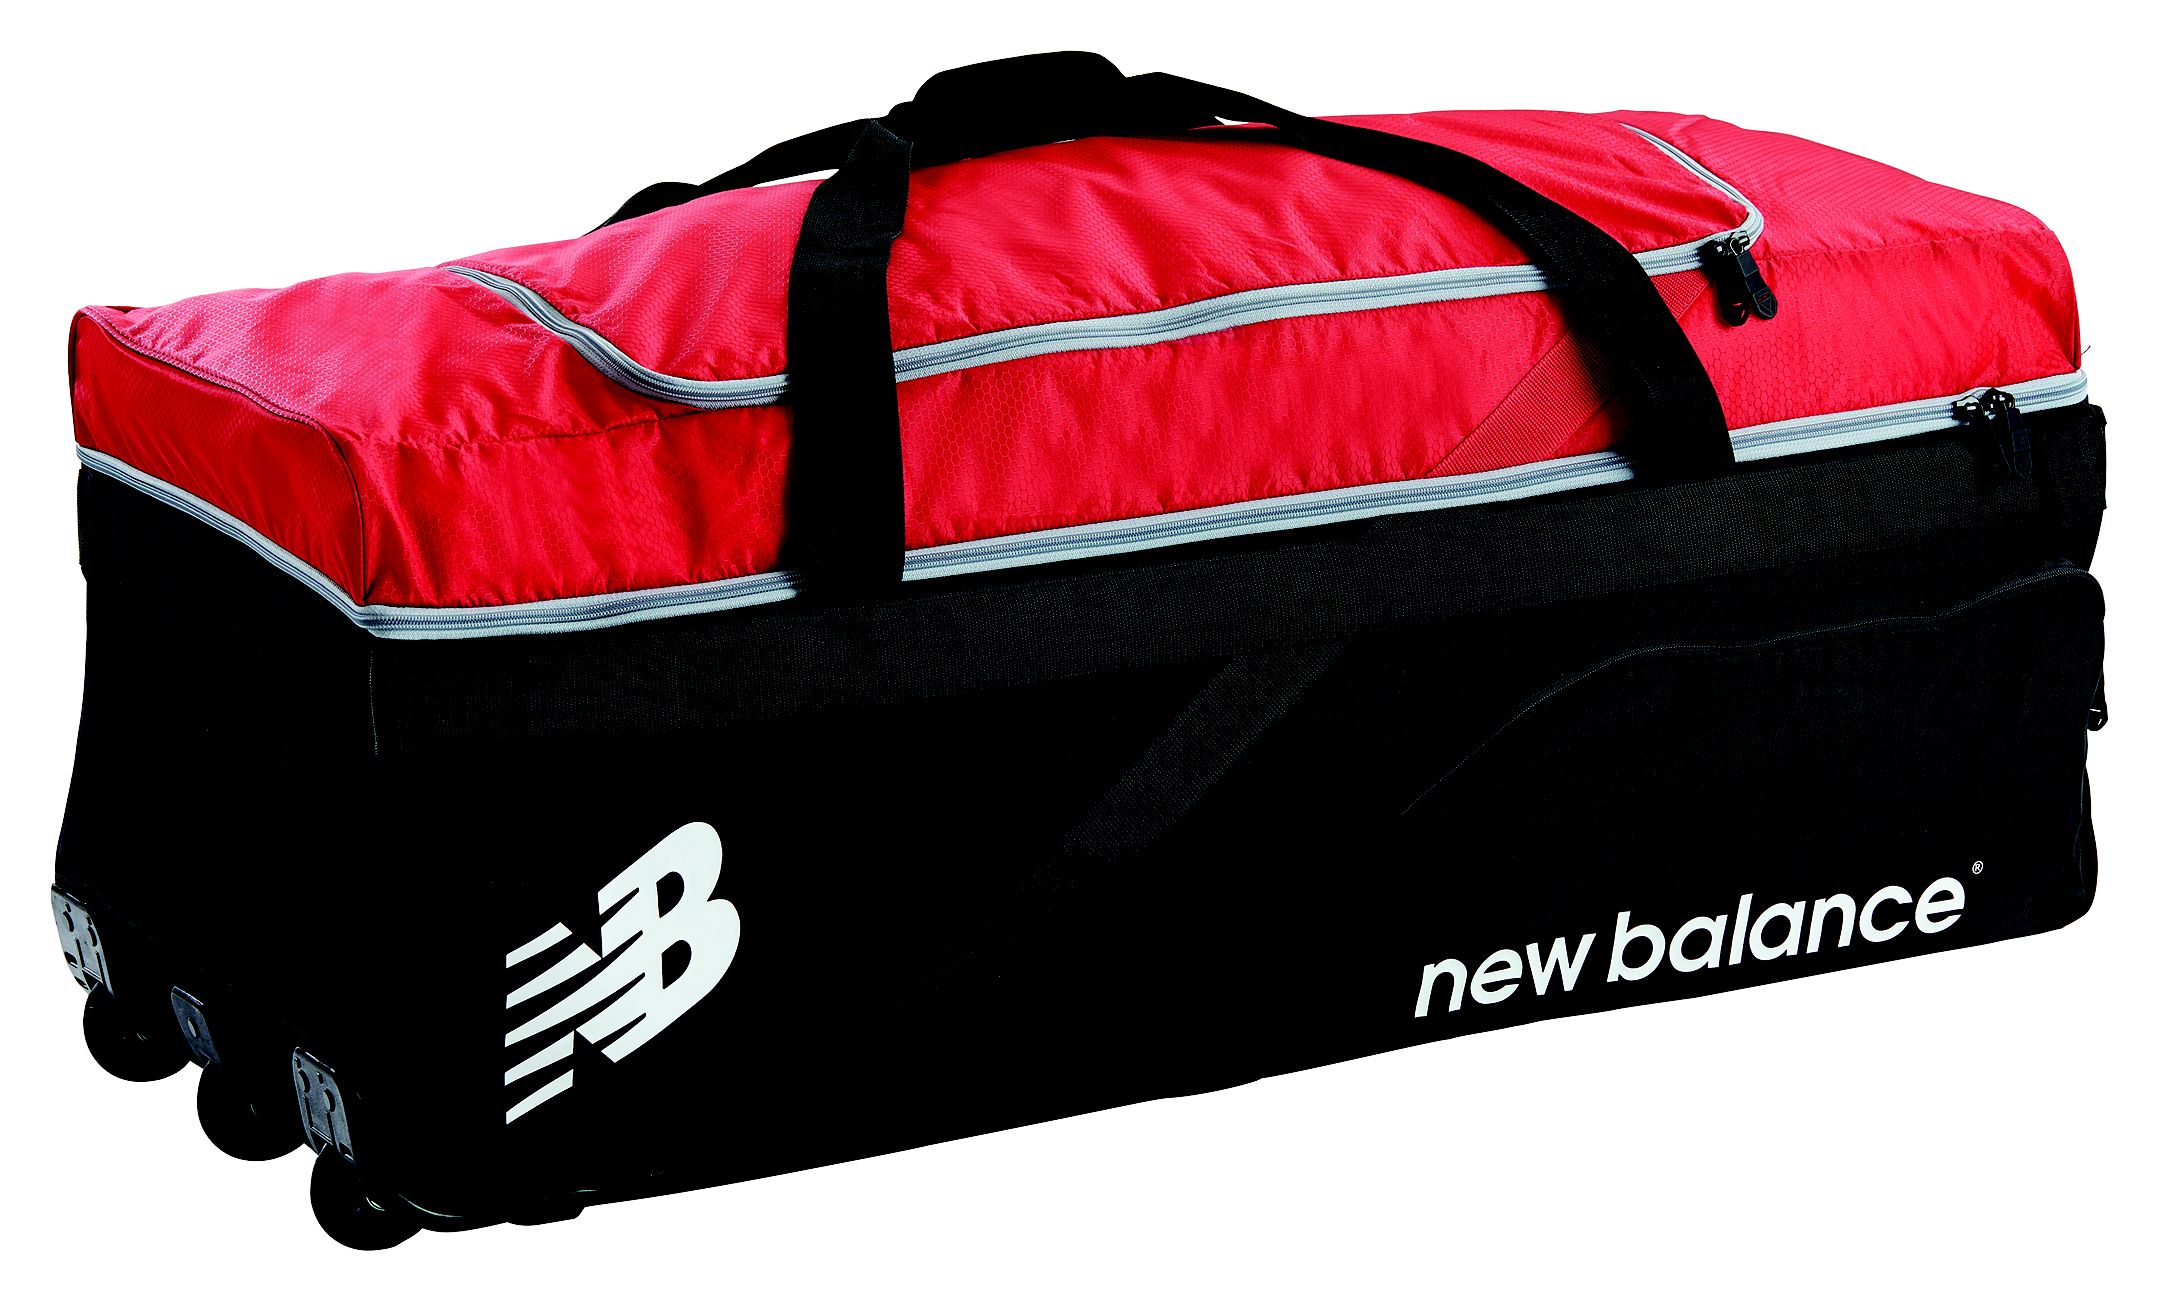 new balance tc 860 kit bag